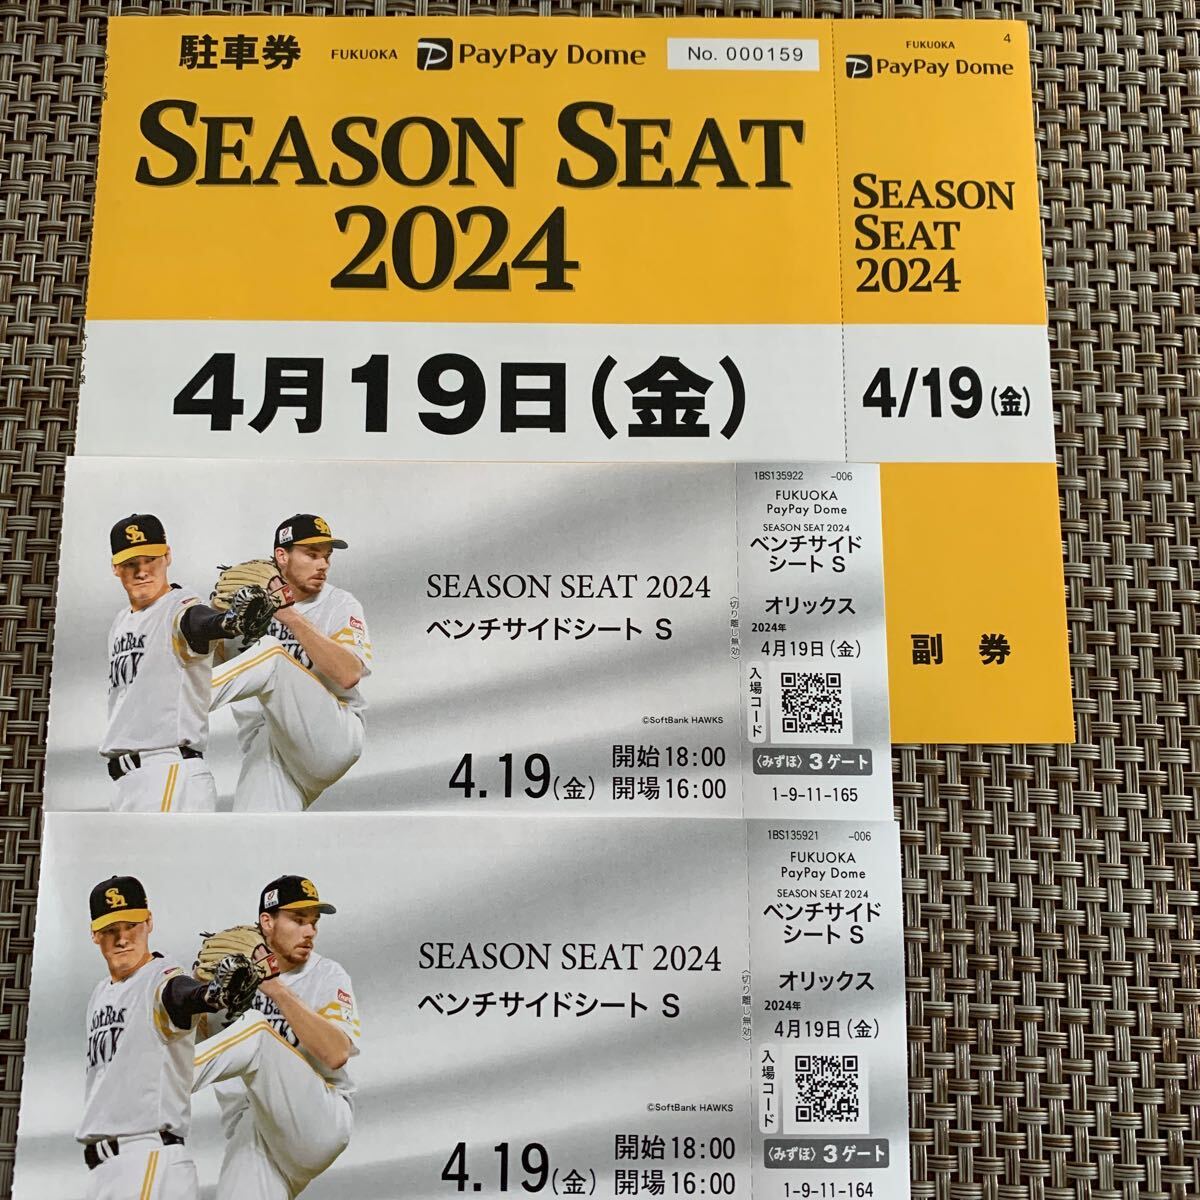 19 апреля Paypay Dome Ticket 2 штуки, установленные с парковочным билетом Softbank Hawks vs Orix